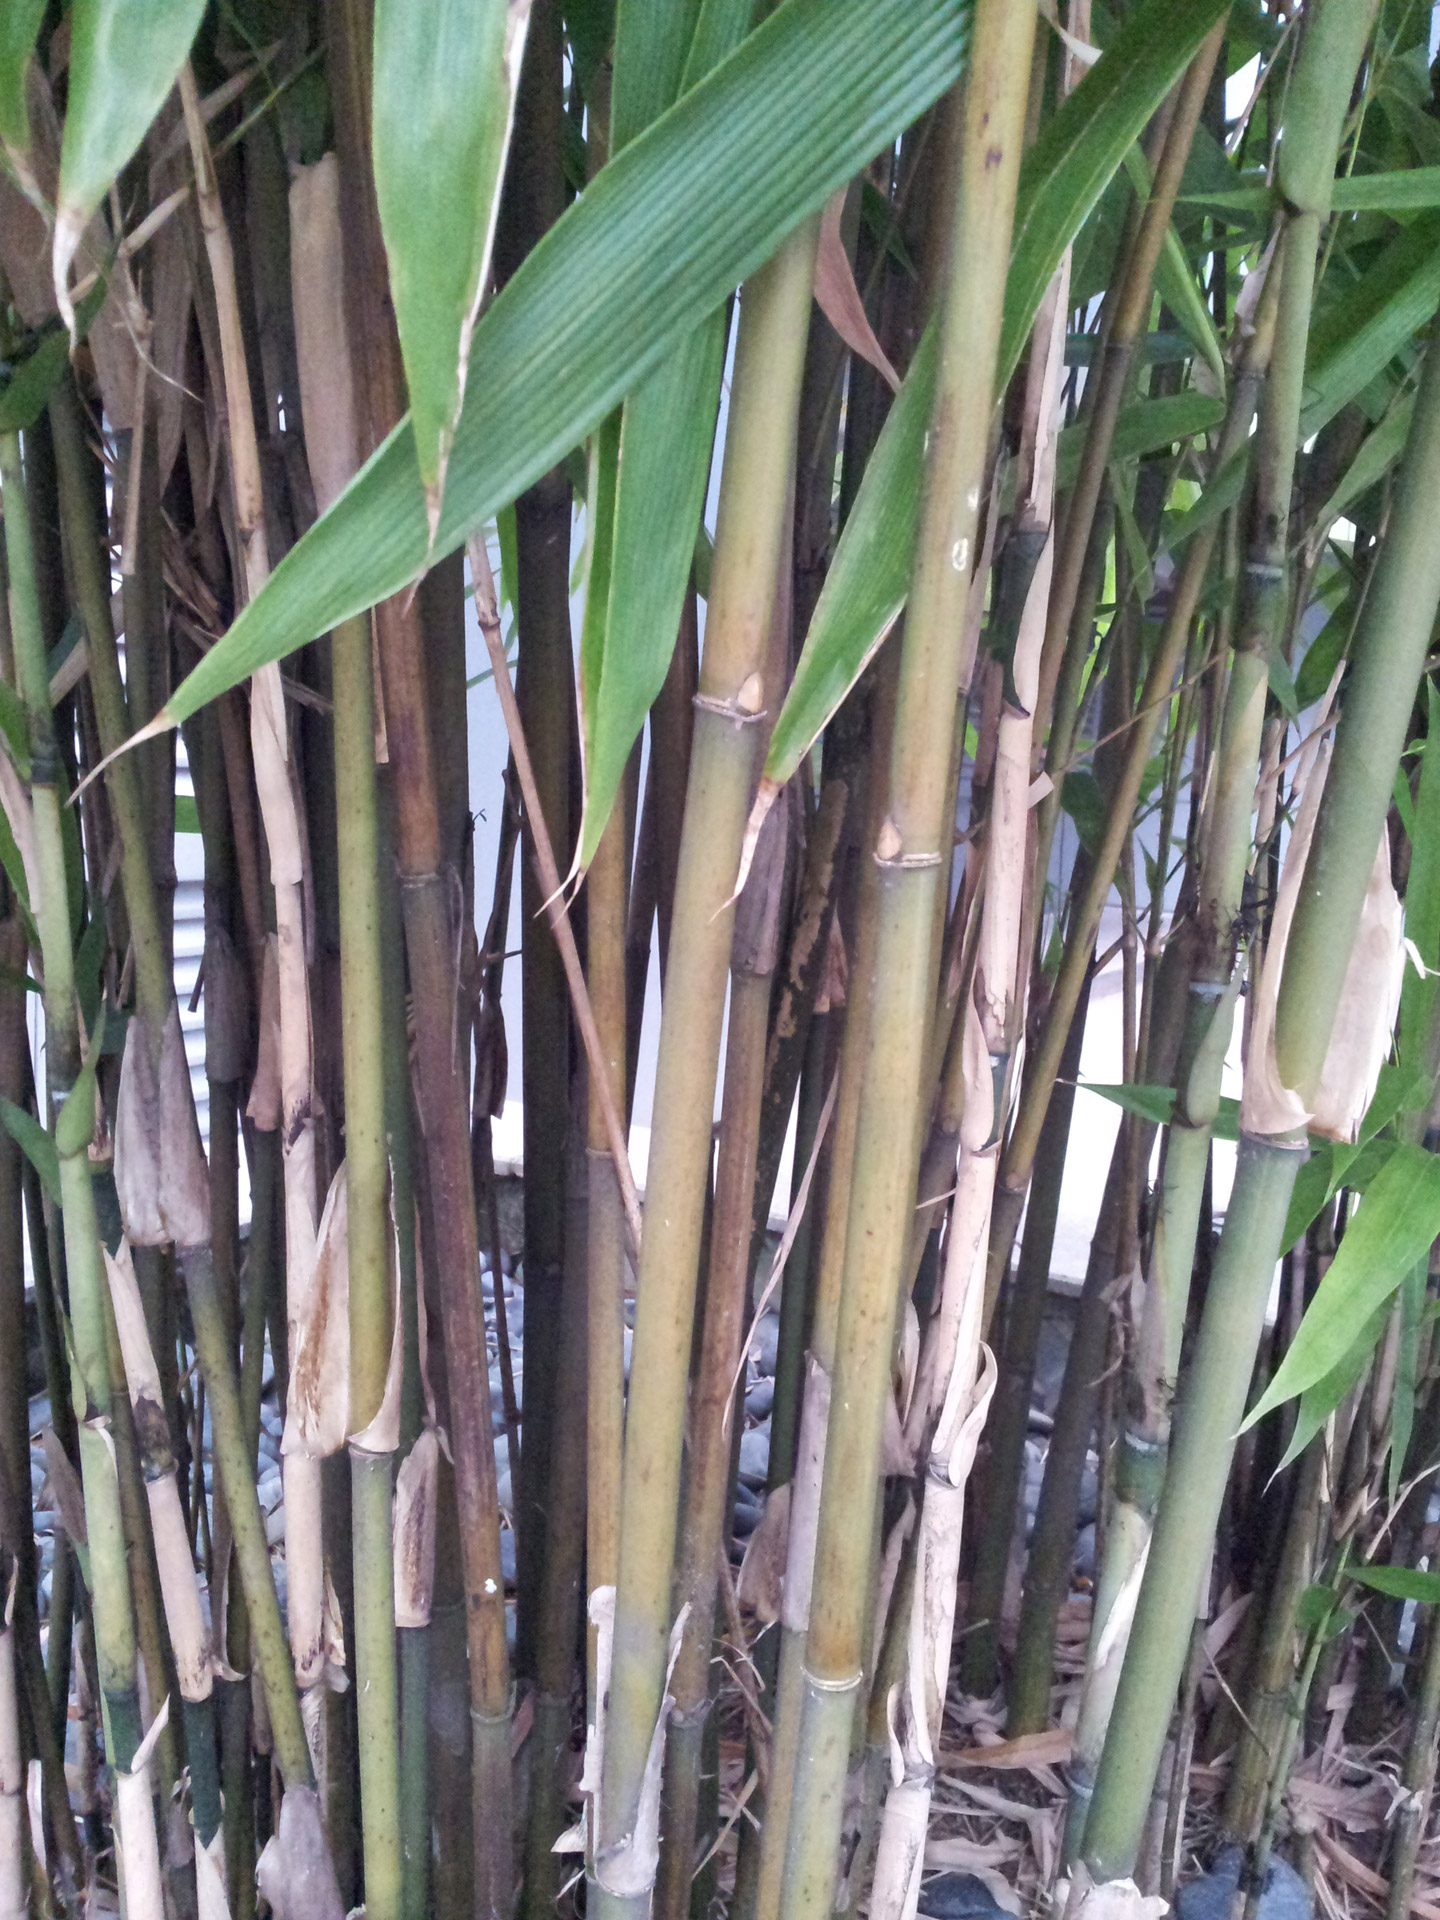 slim bamboo stem free photo